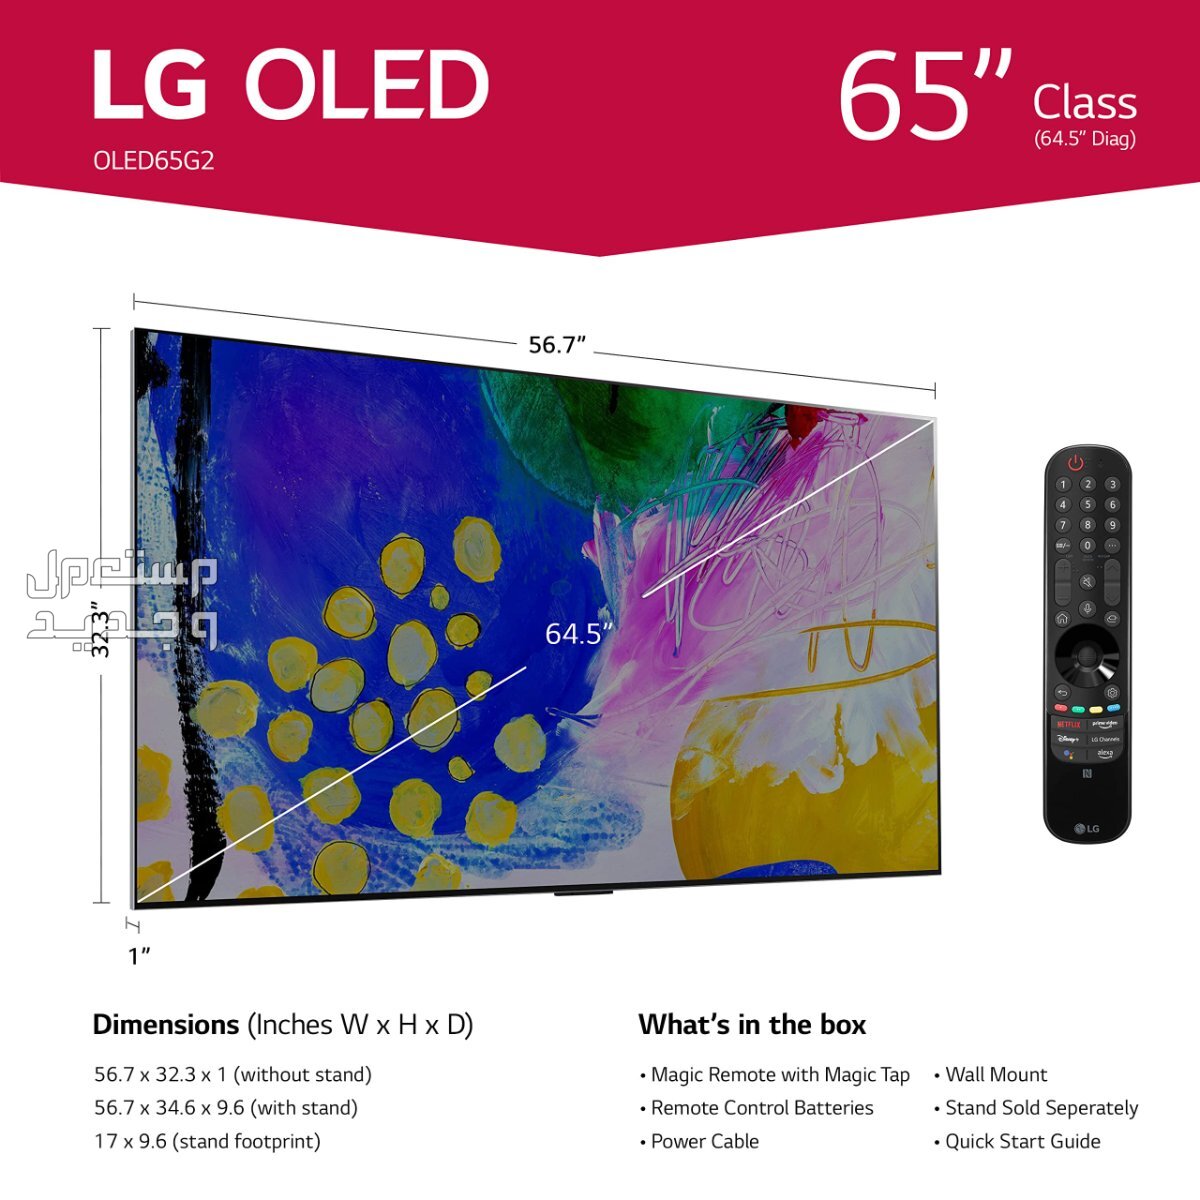 تعرف على مواصفات شاشة سمارت LG G2 OLED في فلسطين LG G2 OLED